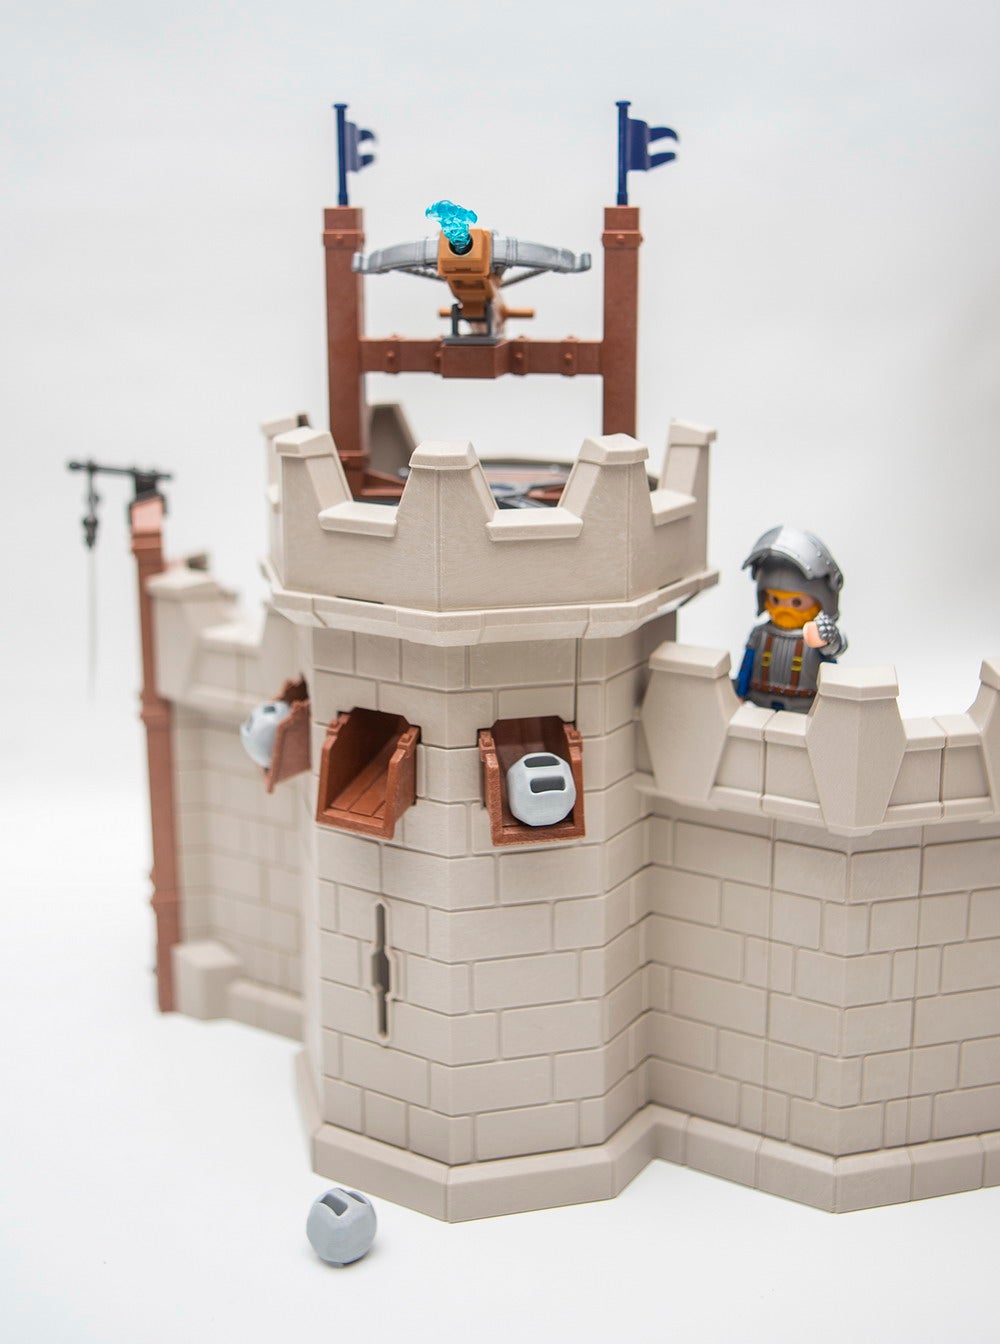 Playmobil Novelmore Castle Review | Figures.com